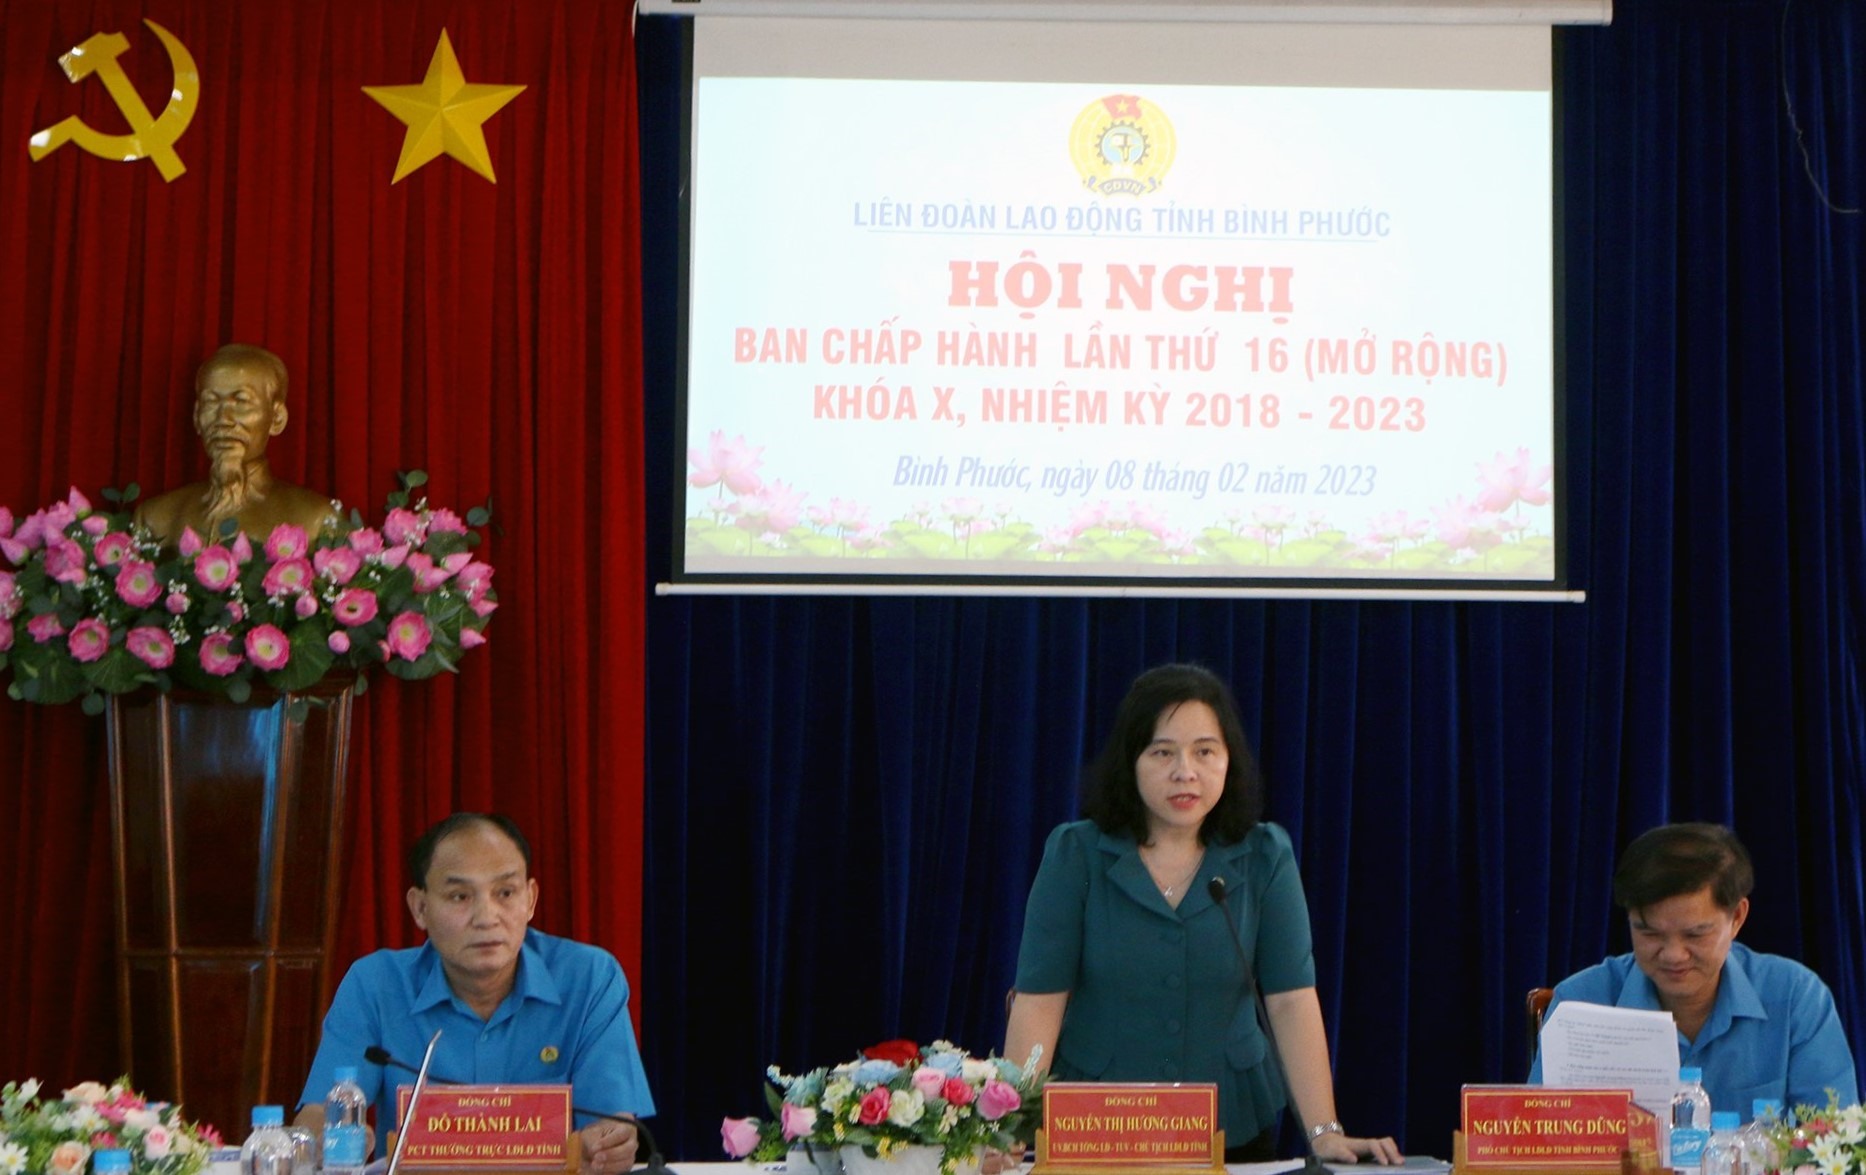 Bà Nguyễn Thị Hương Giang - Chủ tịch LĐLĐ Bình Phước phát biểu tại Hội nghị. Ảnh: